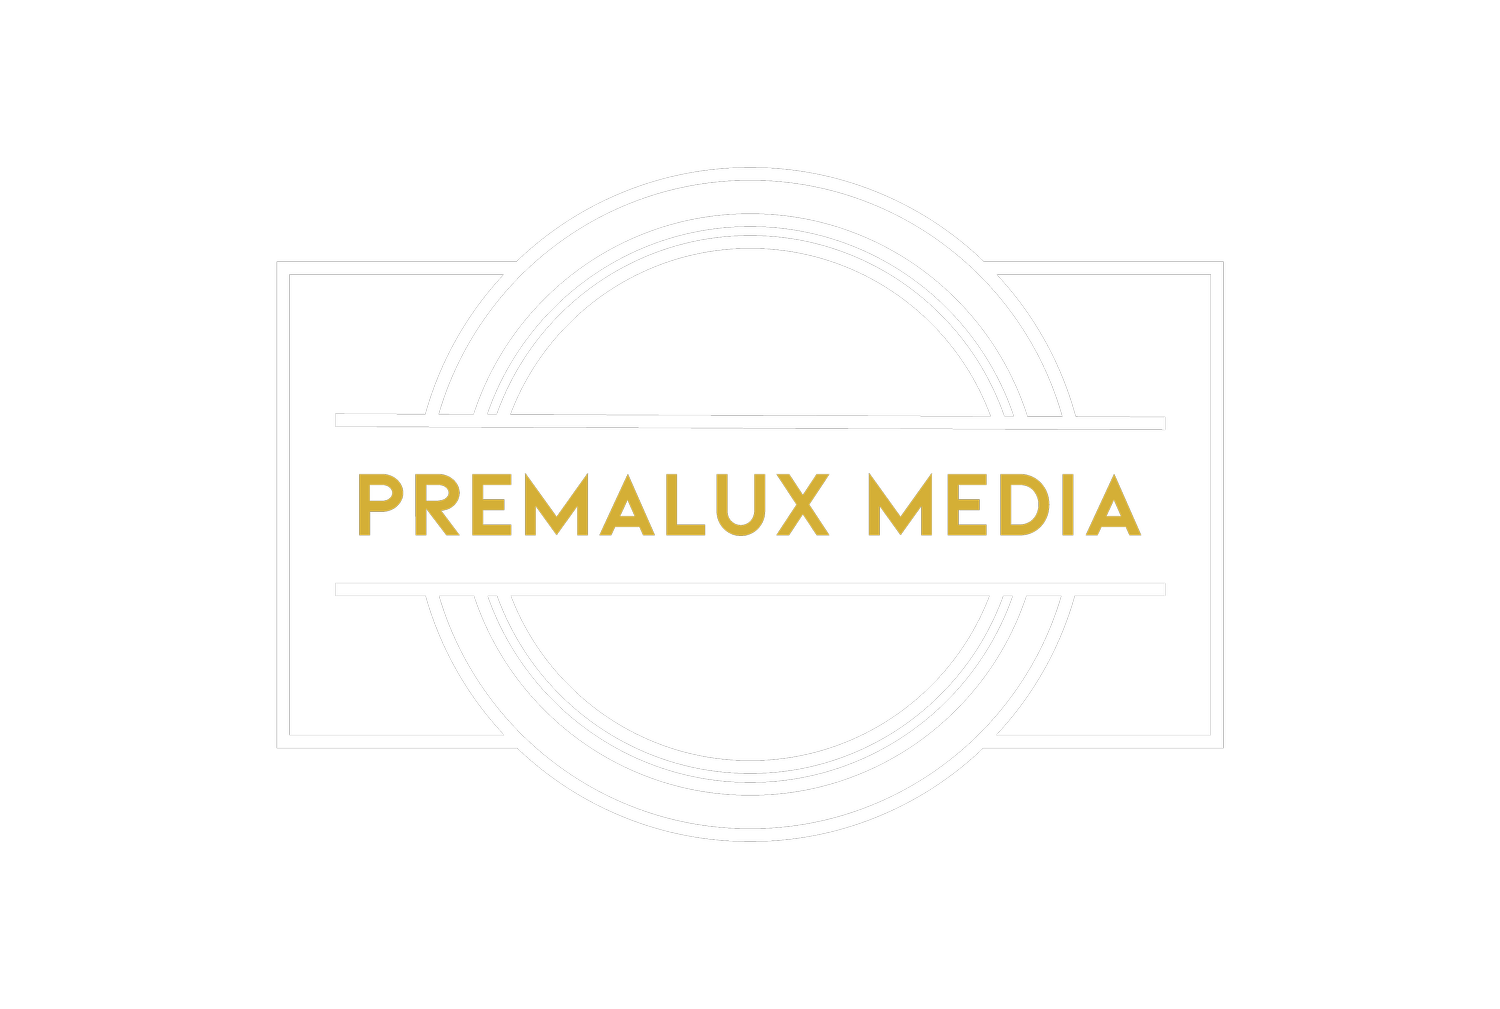    Premalux Media